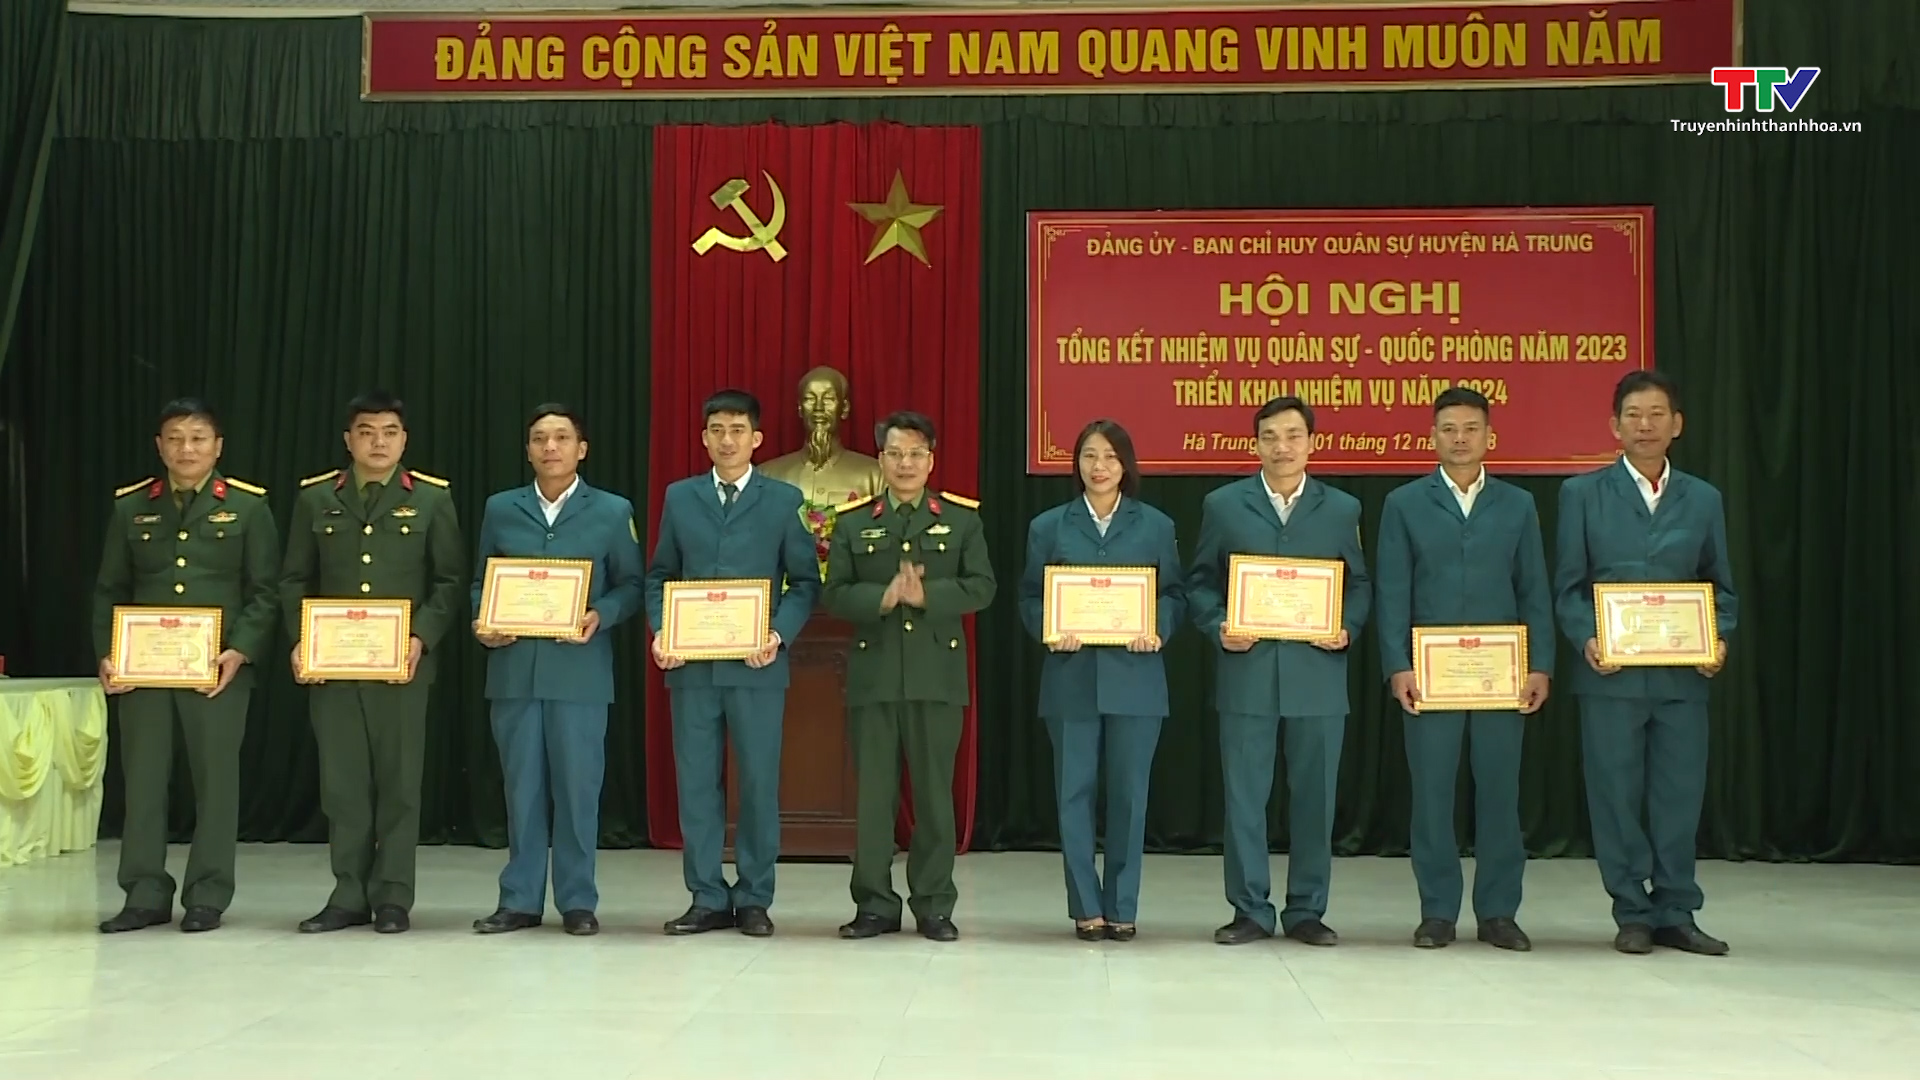 Huyện Hà Trung tổng kết nhiệm vụ quân sự, quốc phòng năm 2023- Ảnh 1.